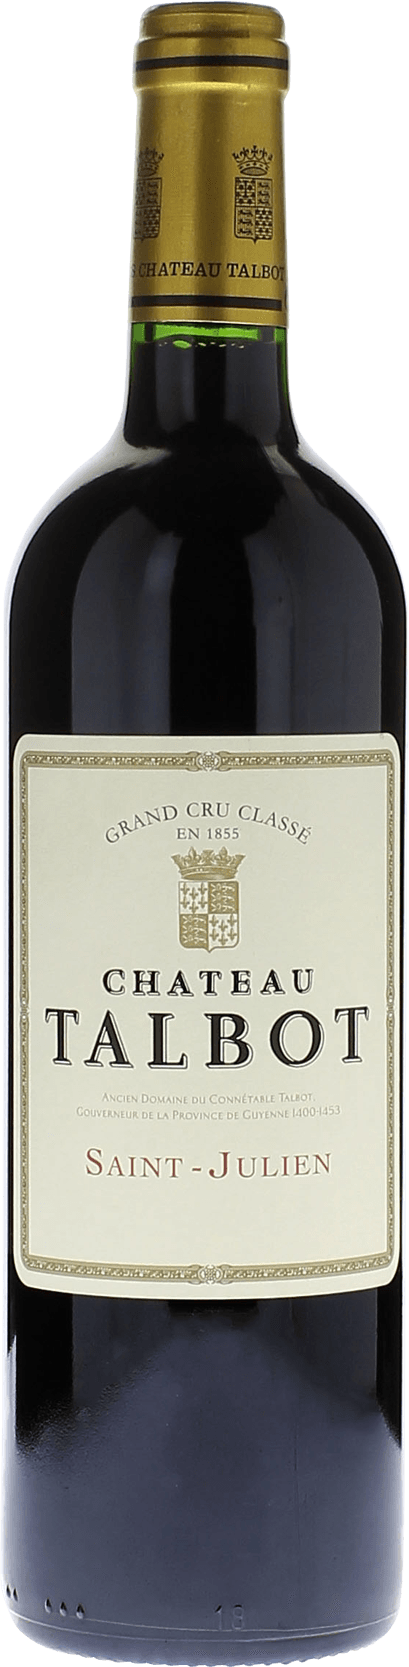 Talbot 2012 4me Grand cru class Saint-Julien, Bordeaux rouge